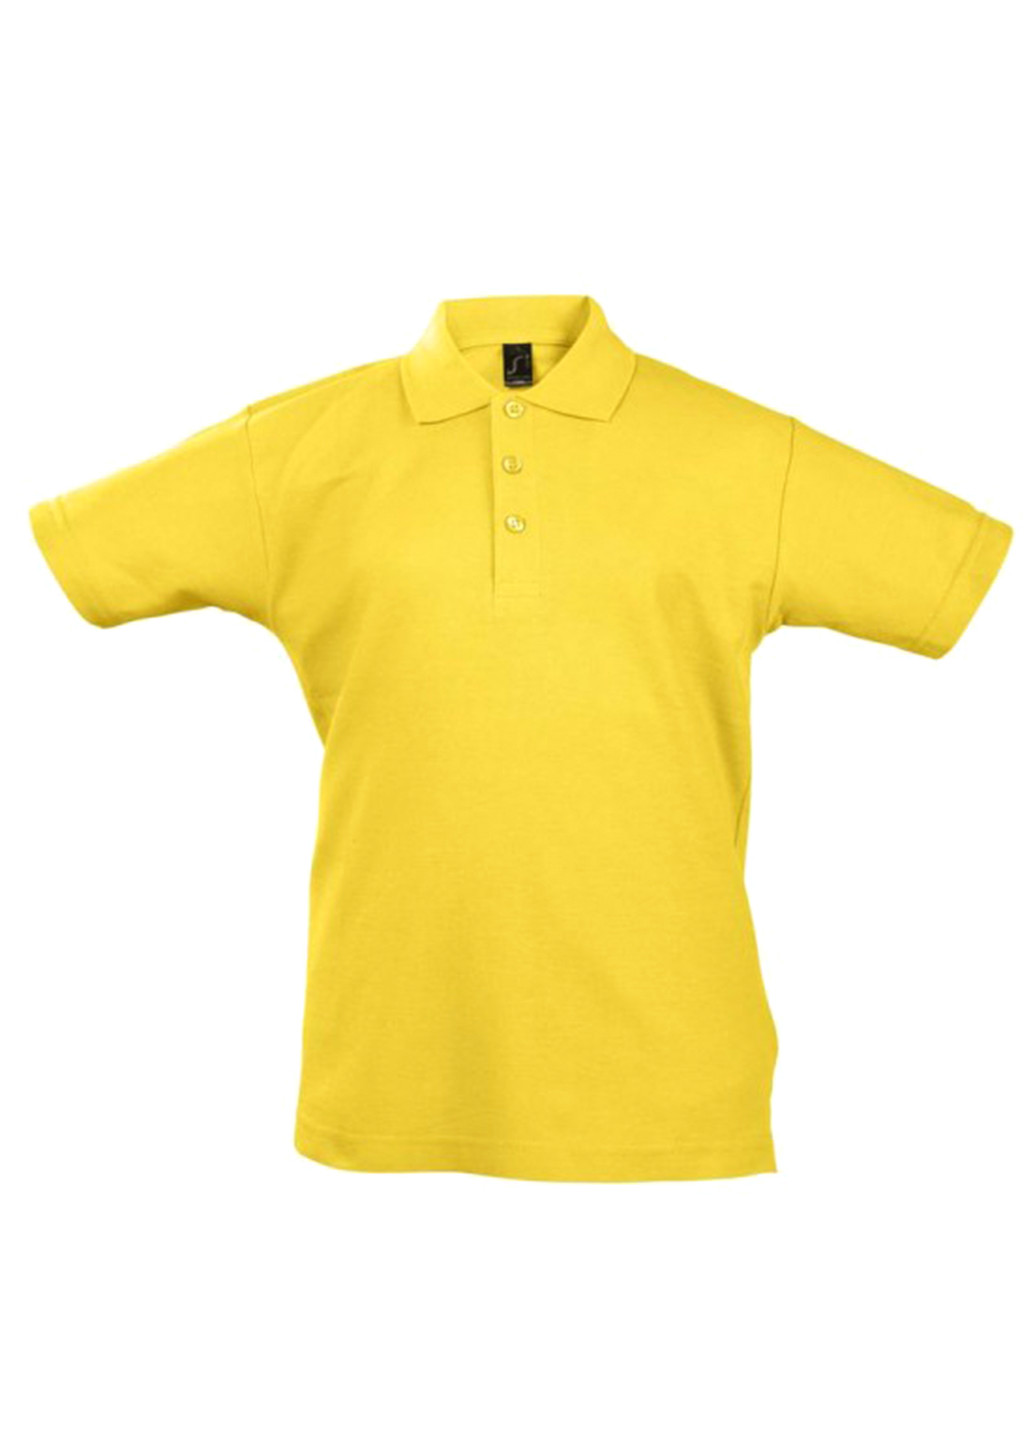 Желтая детская футболка-поло для мальчика Sol's